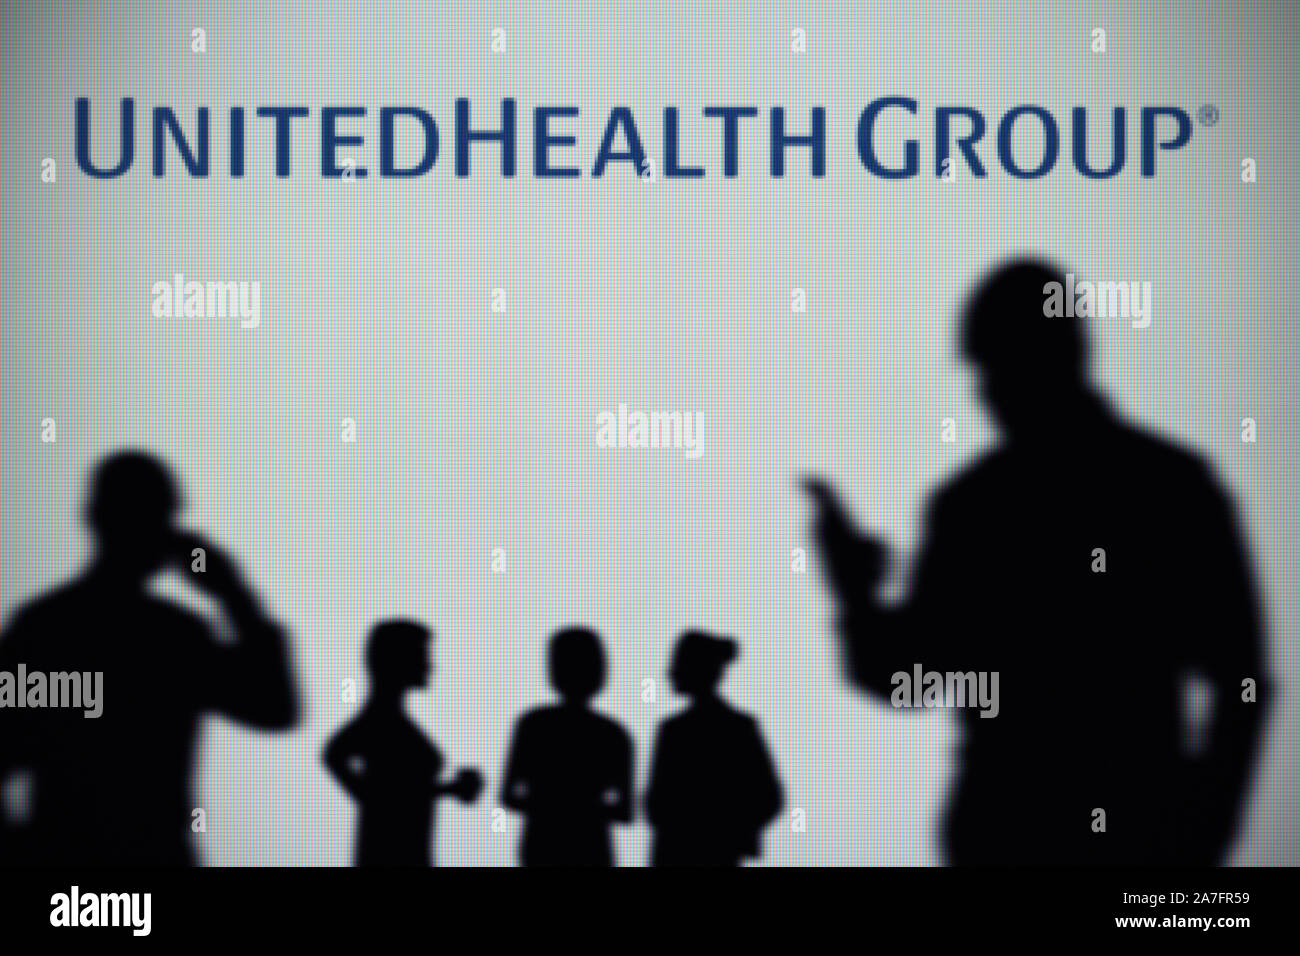 L'UnitedHealth Group logo est visible sur un écran LED à l'arrière-plan tandis qu'une silhouette personne utilise un smartphone (usage éditorial uniquement) Banque D'Images